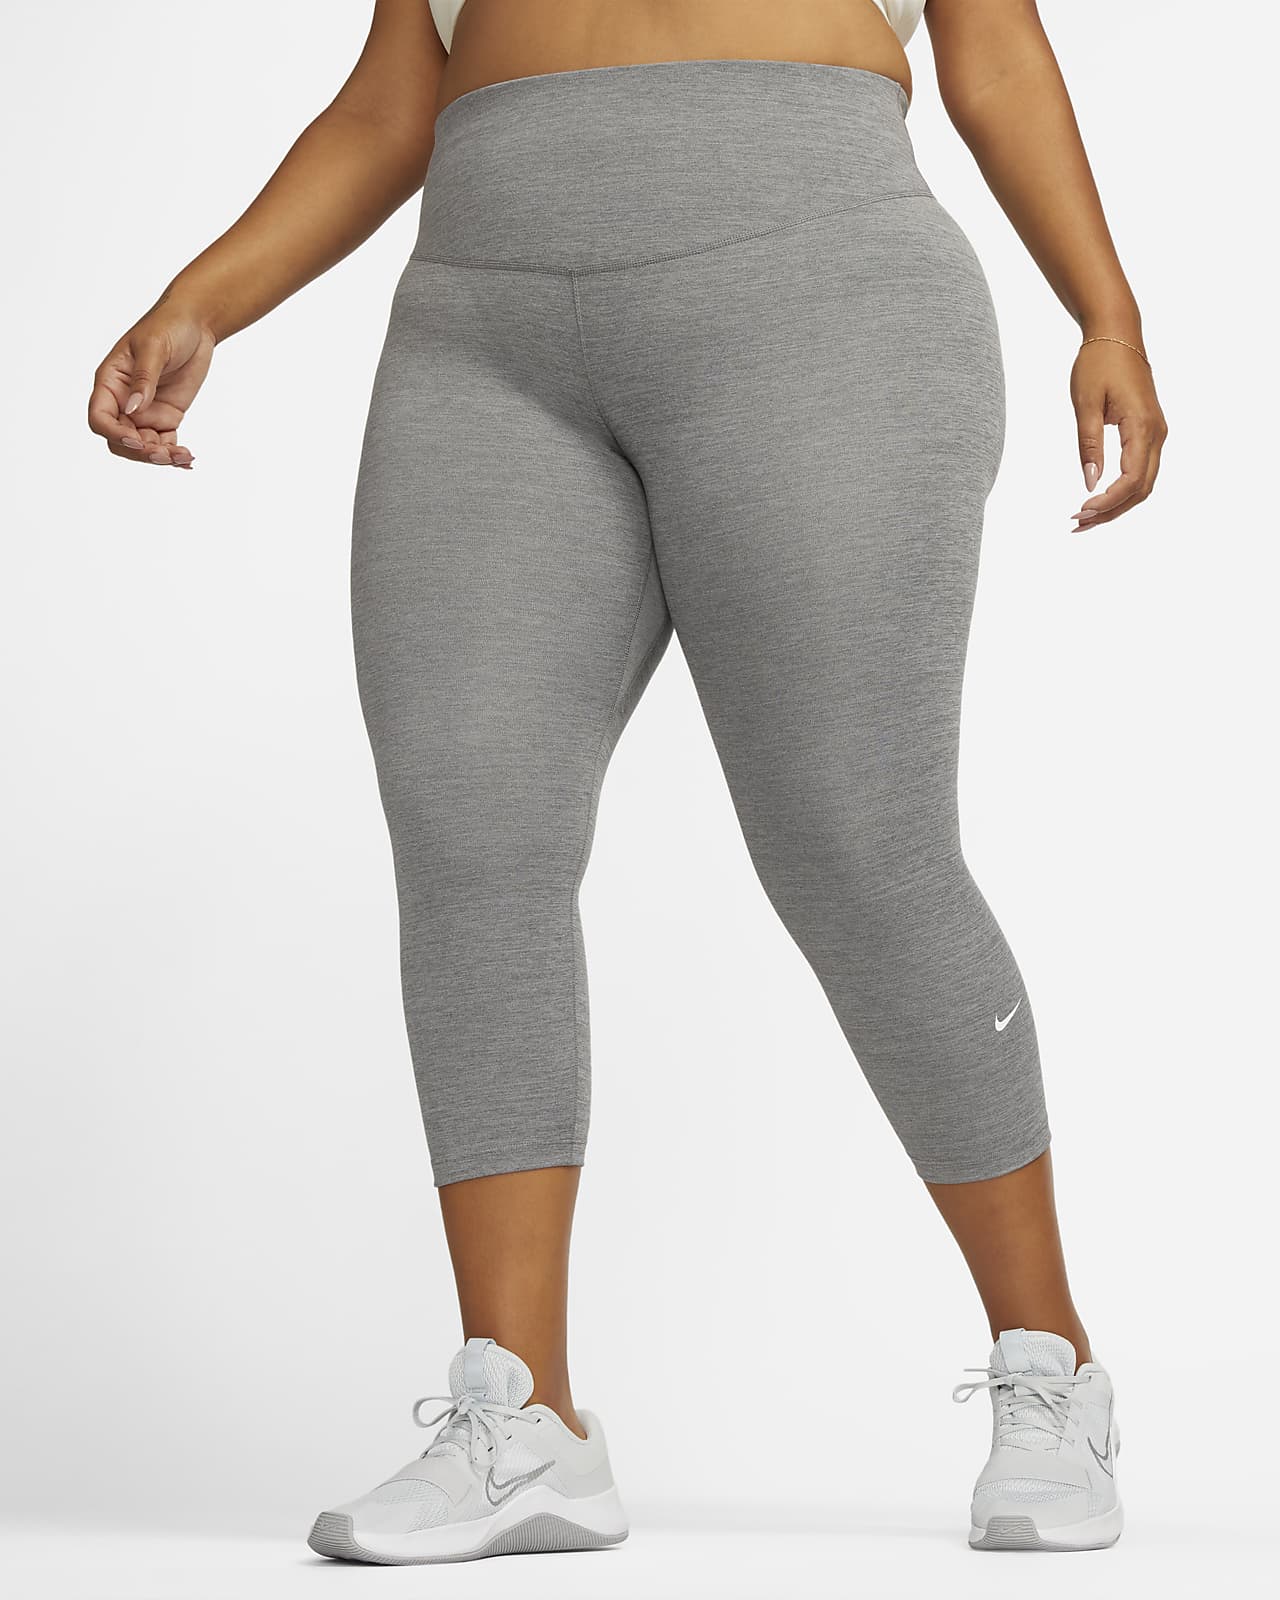 Tag væk en kop klamre sig Nike One Women's Mid-Rise Crop Leggings (Plus Size). Nike.com